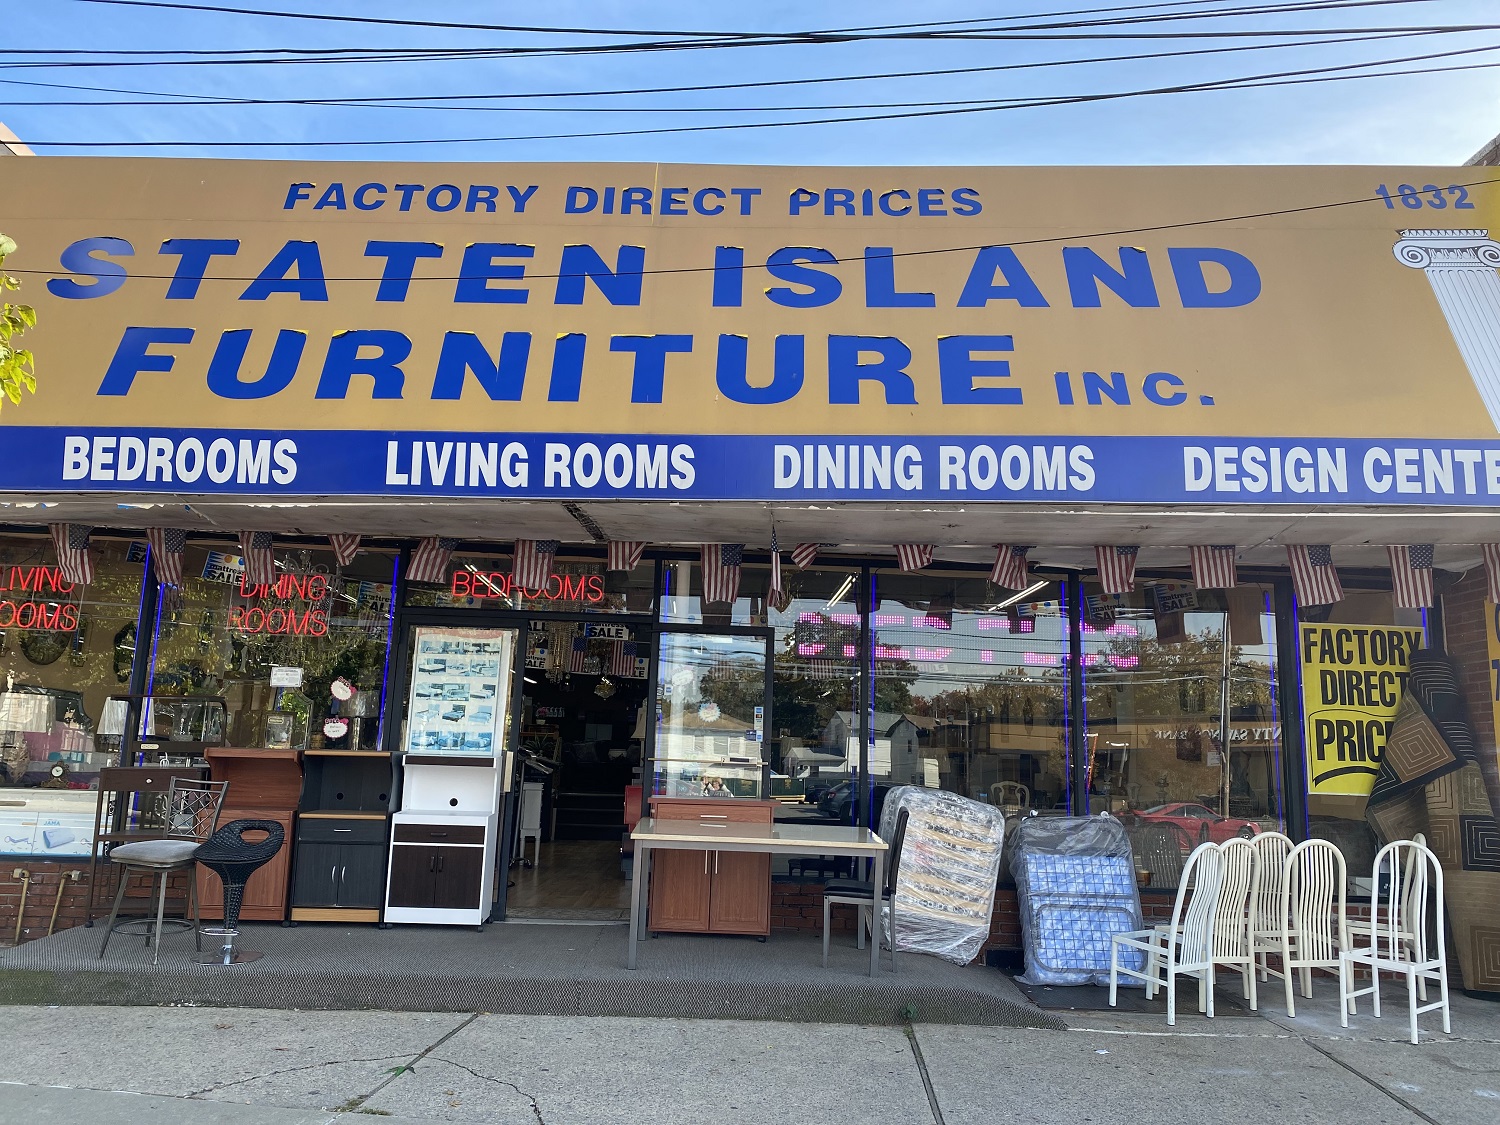 纽约家具店/718-351-8400史丹顿岛家具店Staten Island Furniture Inc./品牌家具/名牌家具推荐/代理各种名牌家俱